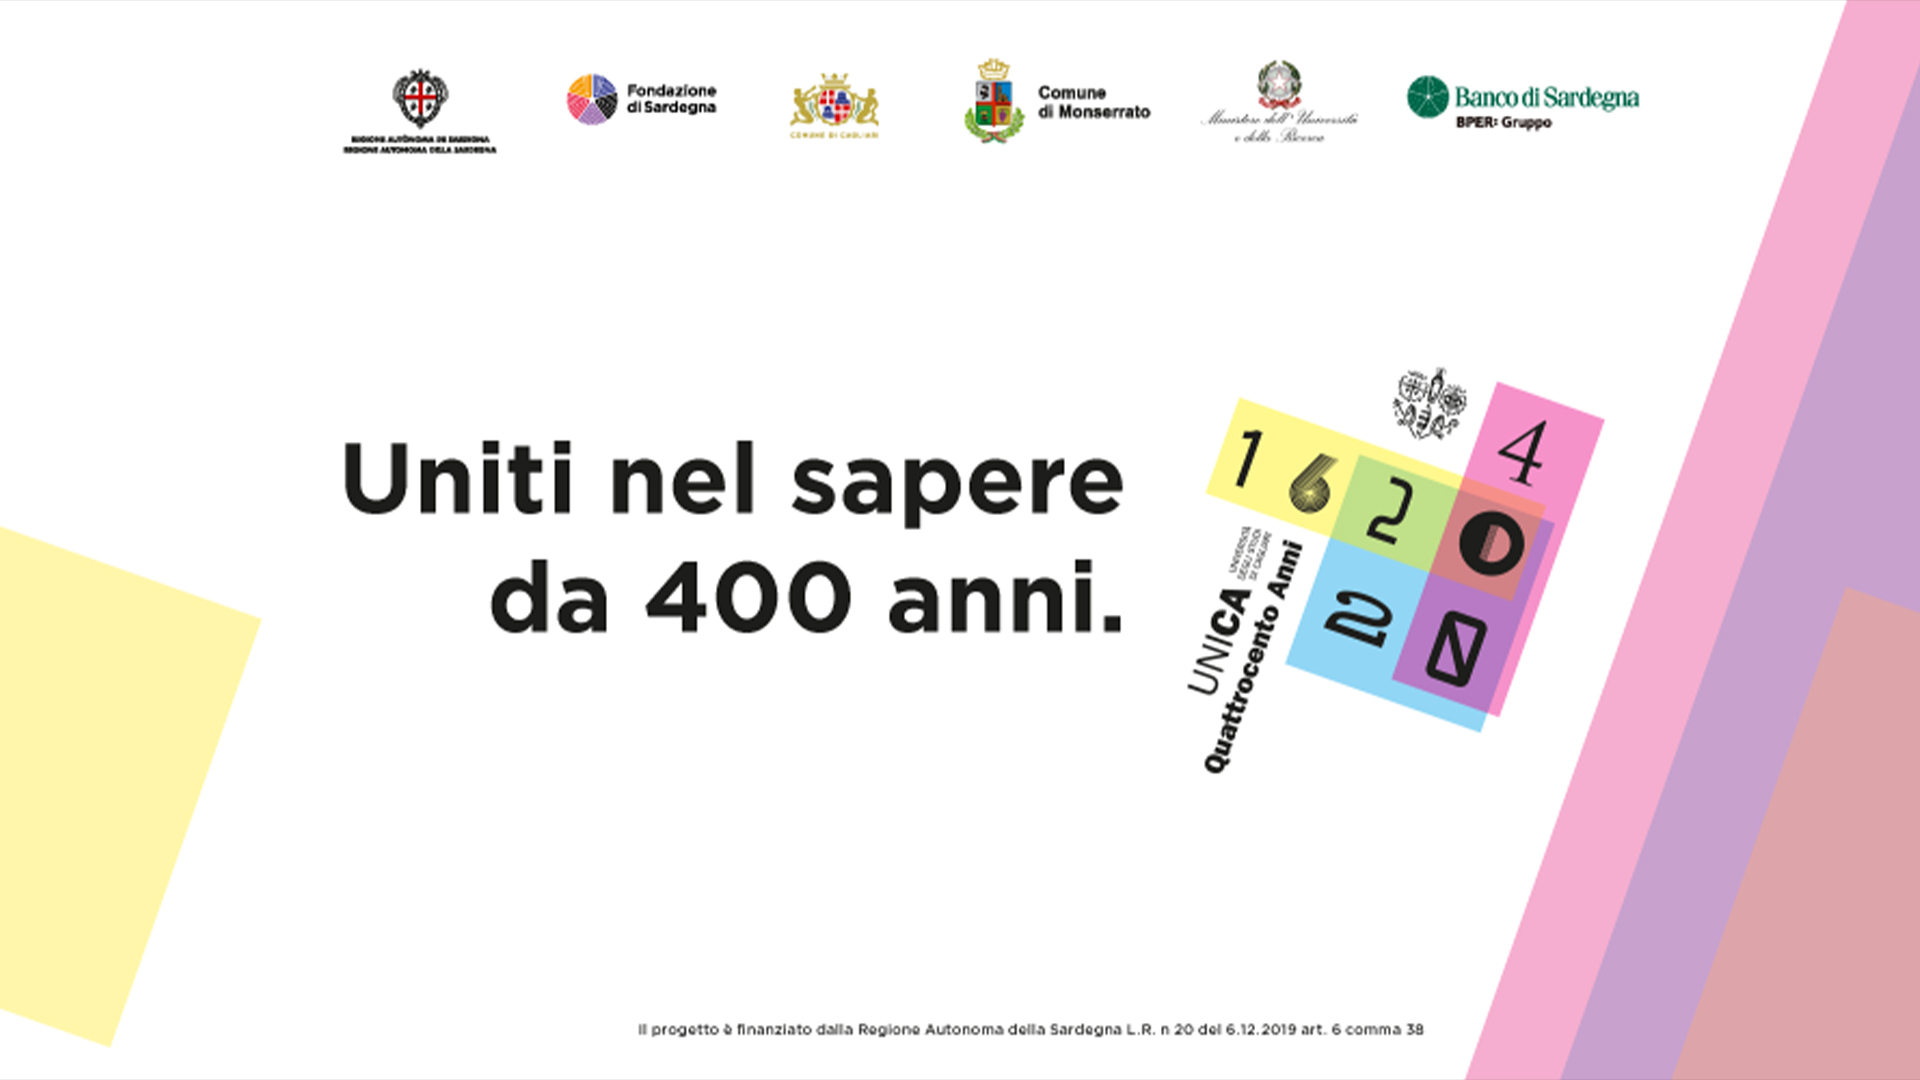 L’Agenzia Spaziale Italiana partecipa alle celebrazioni dei 400 anni dell’Università degli Studi di Cagliari